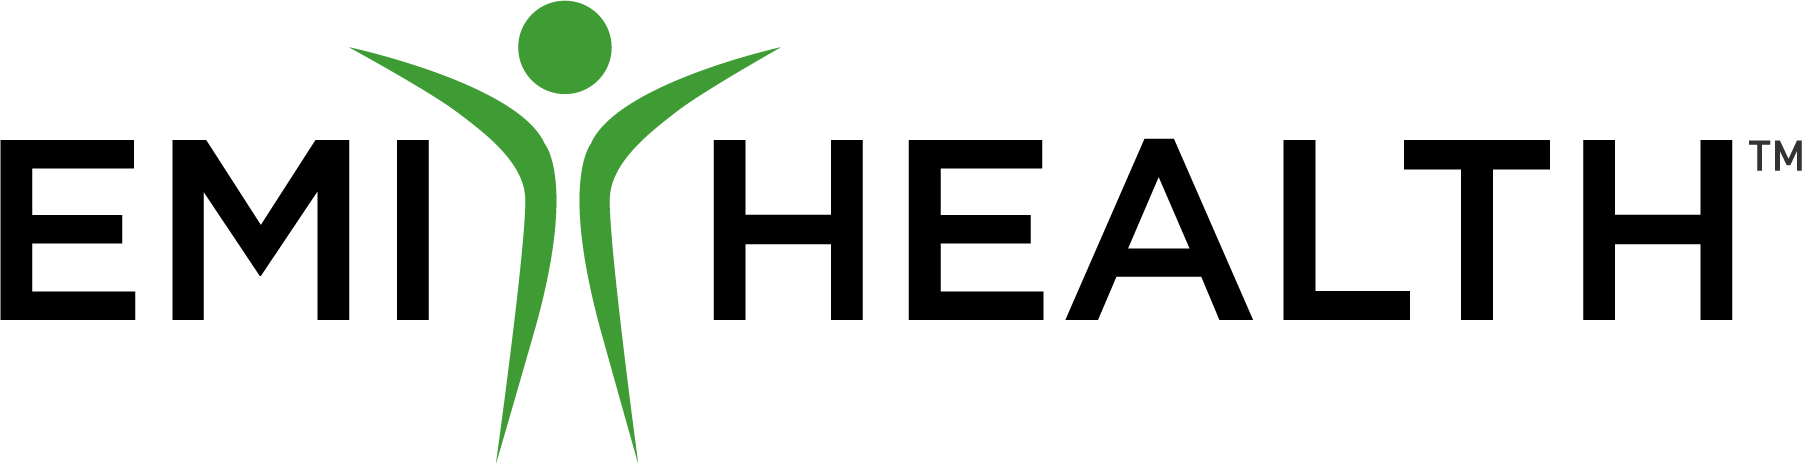 logo_blk_green(1) - Copy